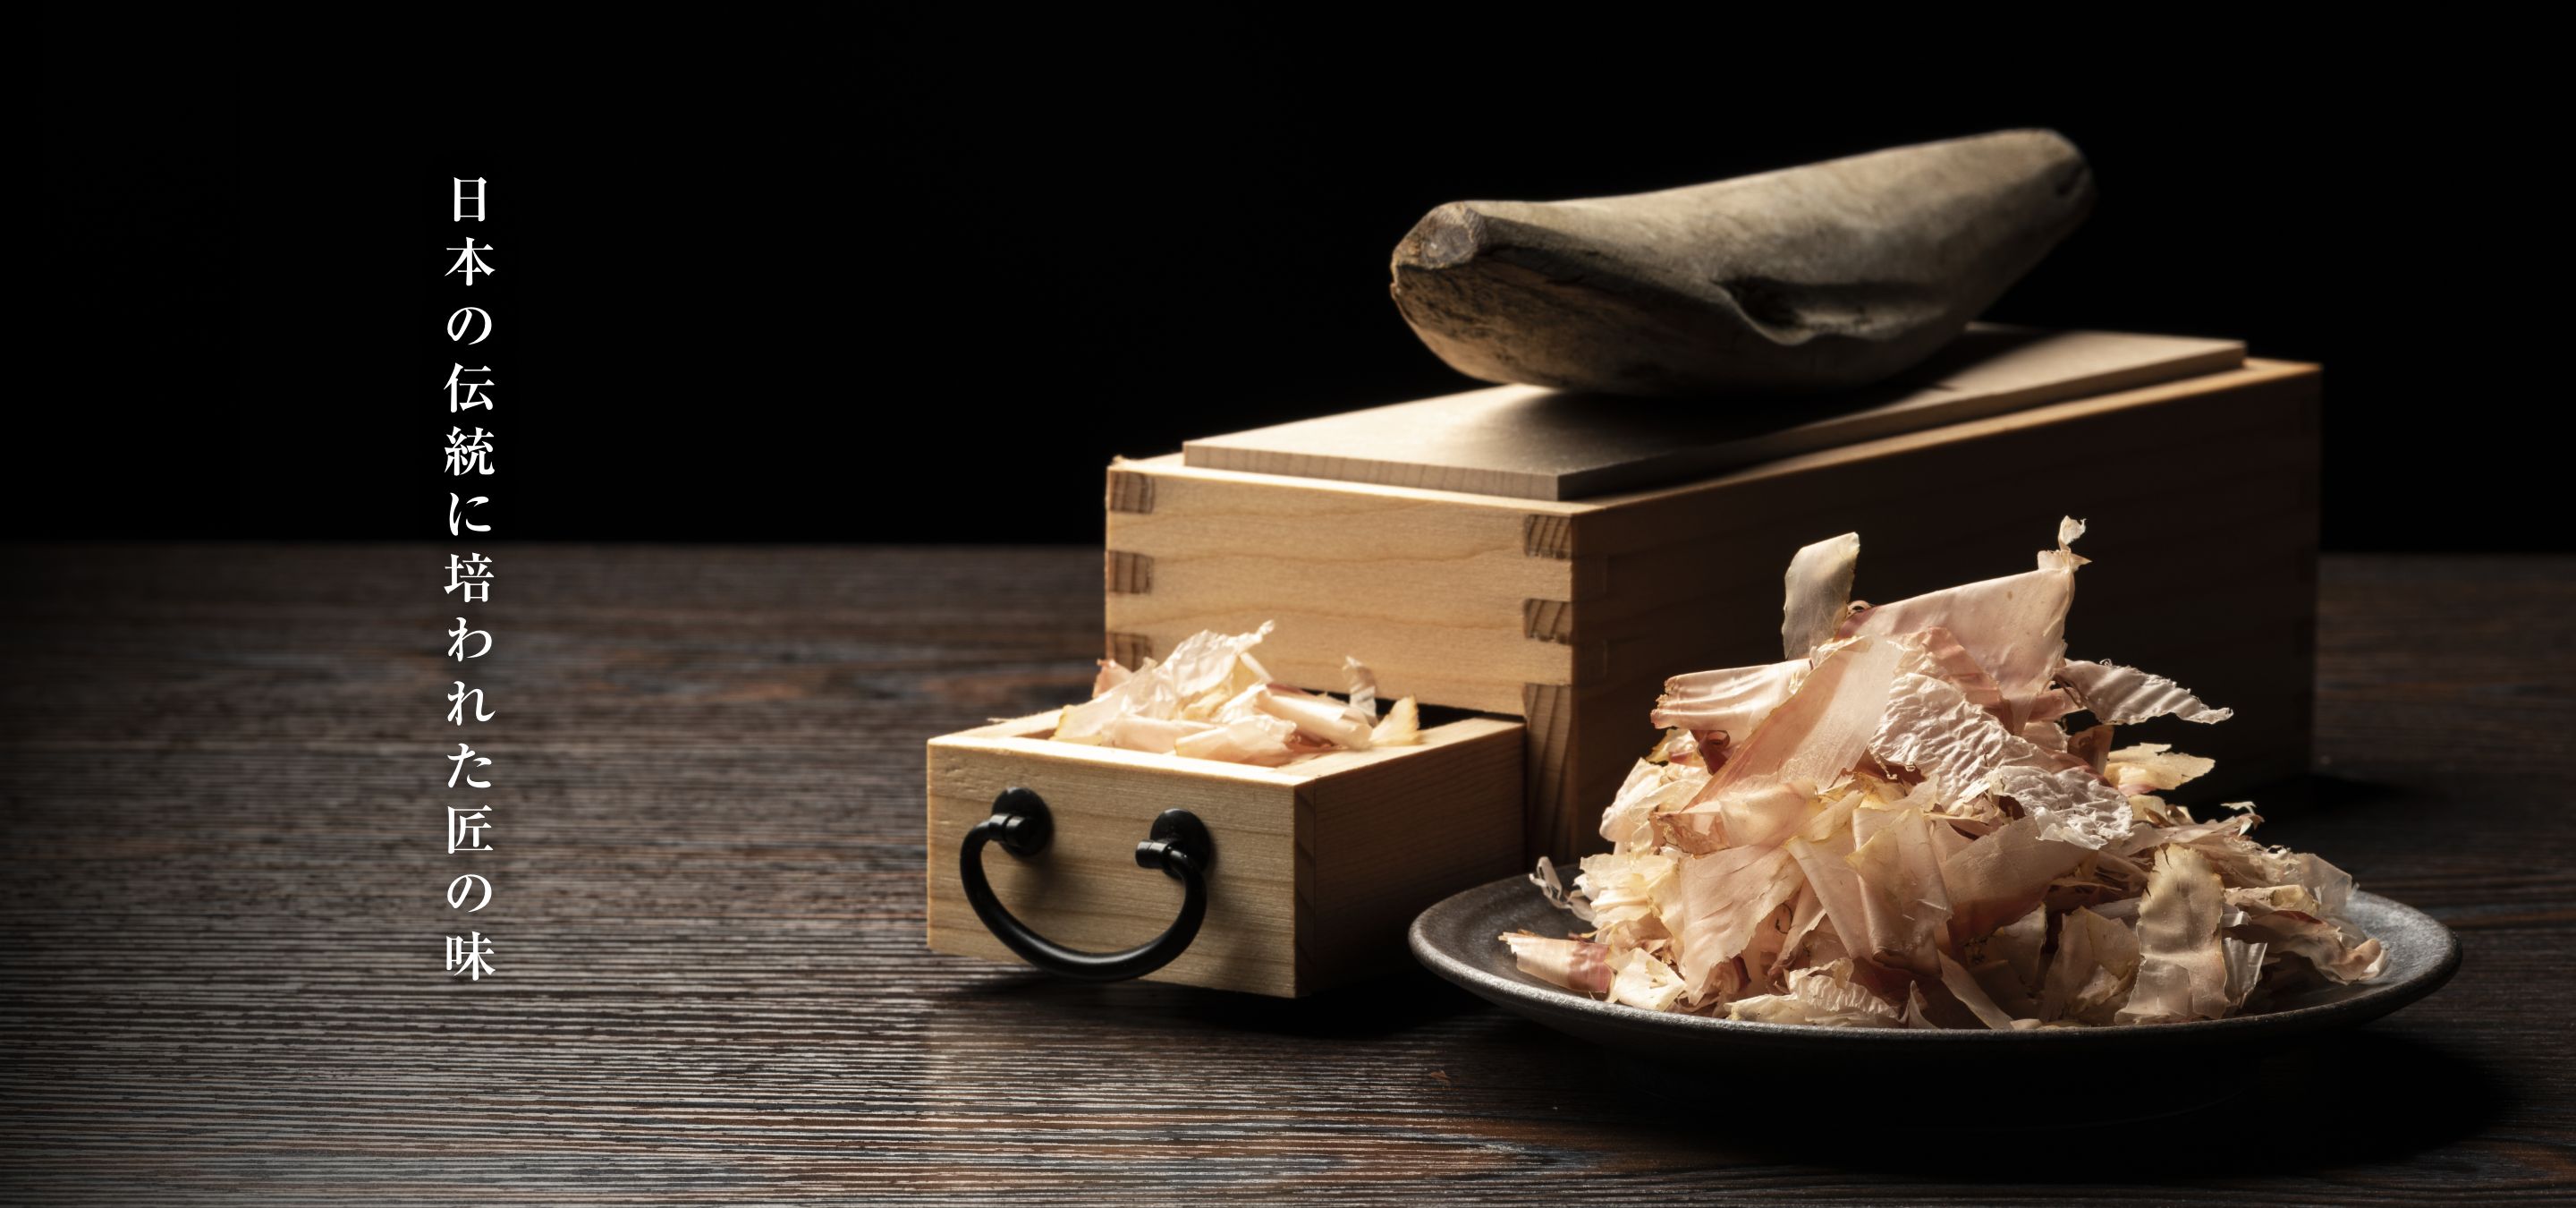 日本の伝統に培われた匠の味